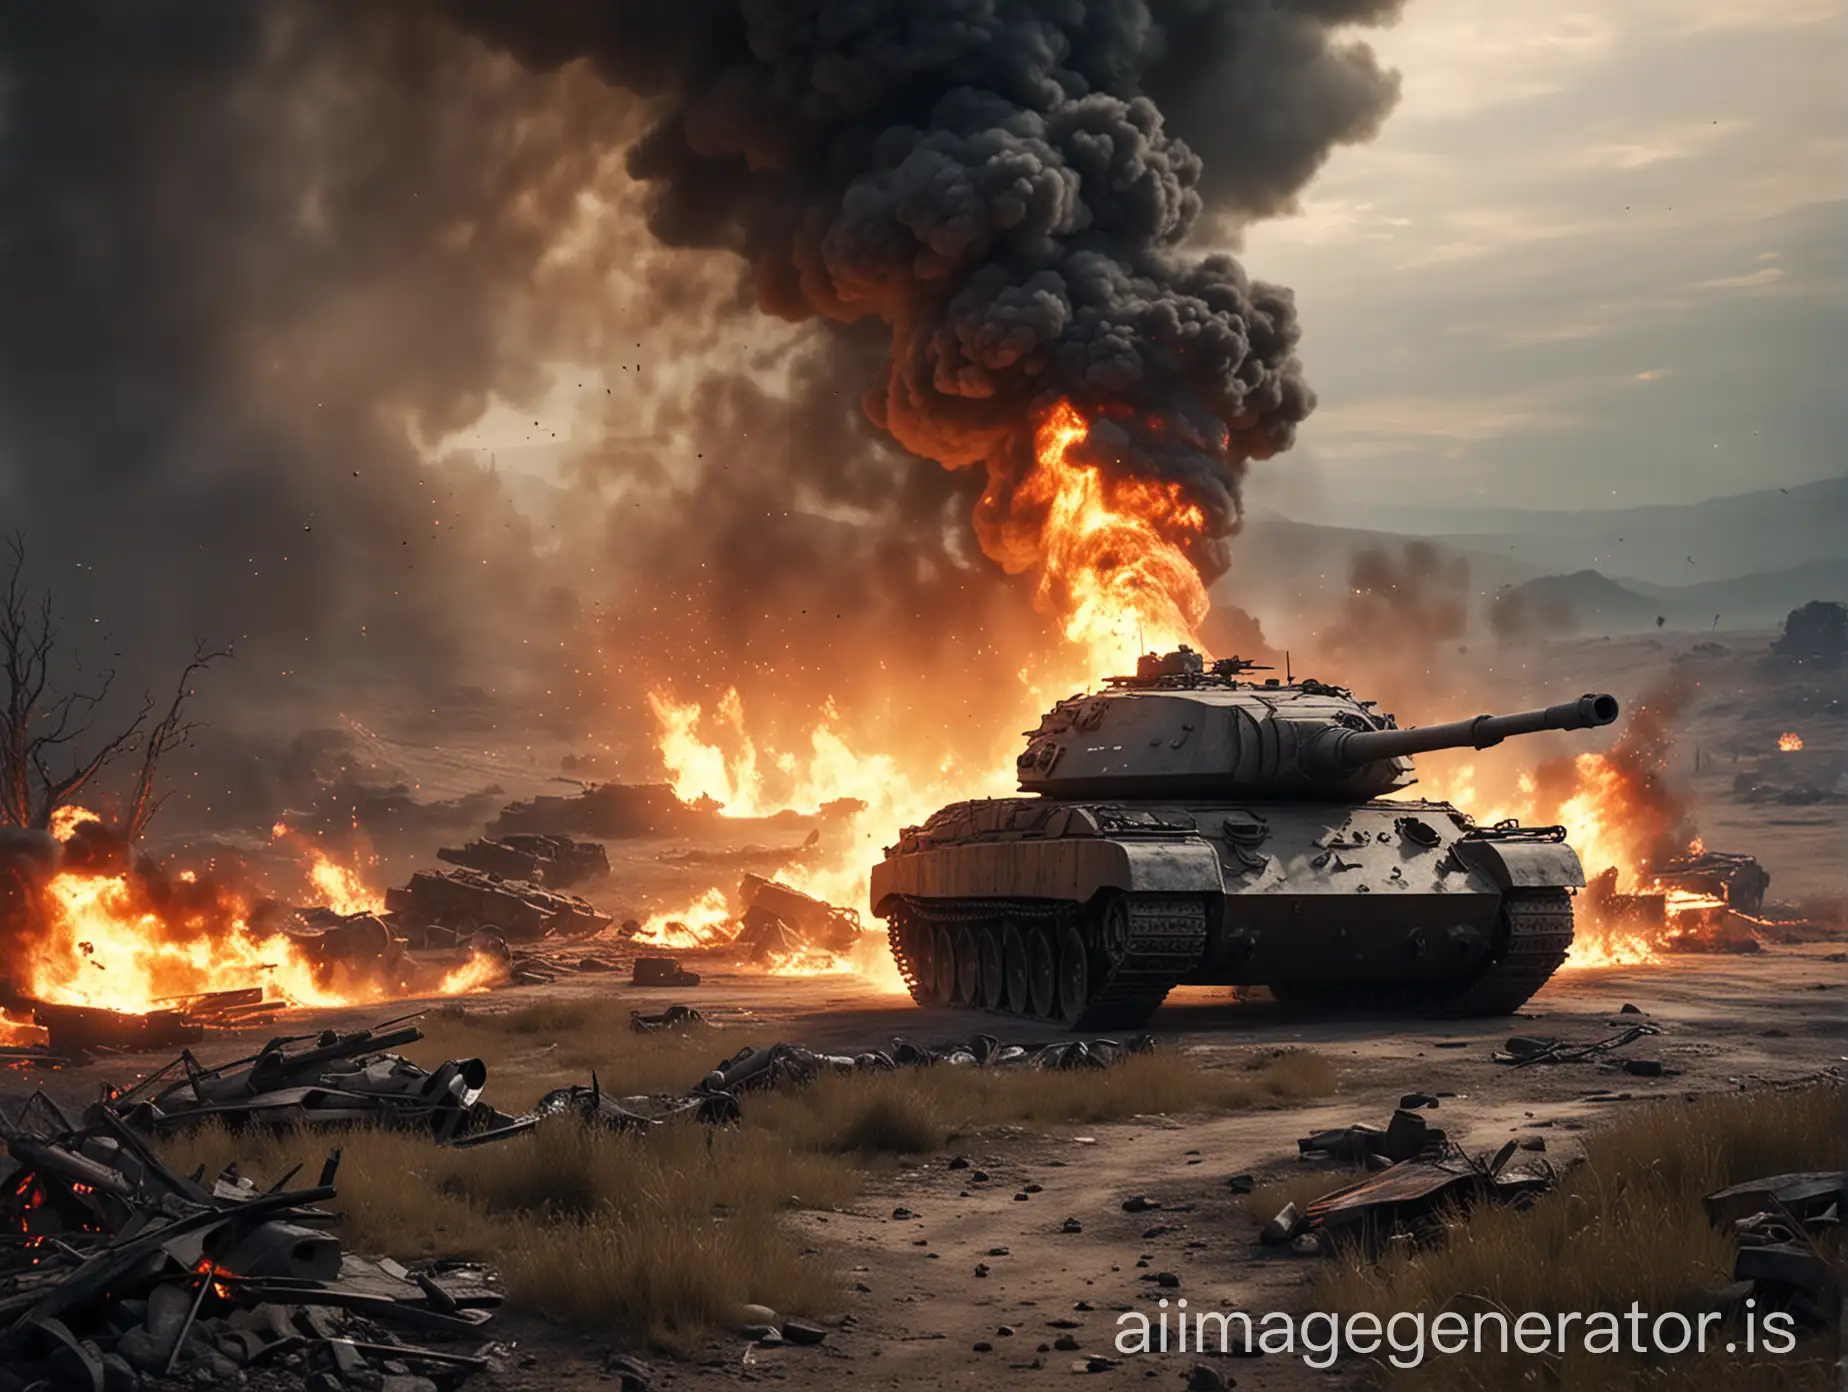 Intense-Battlefield-Scene-with-Blazing-Tank-in-Full-HD-Landscape